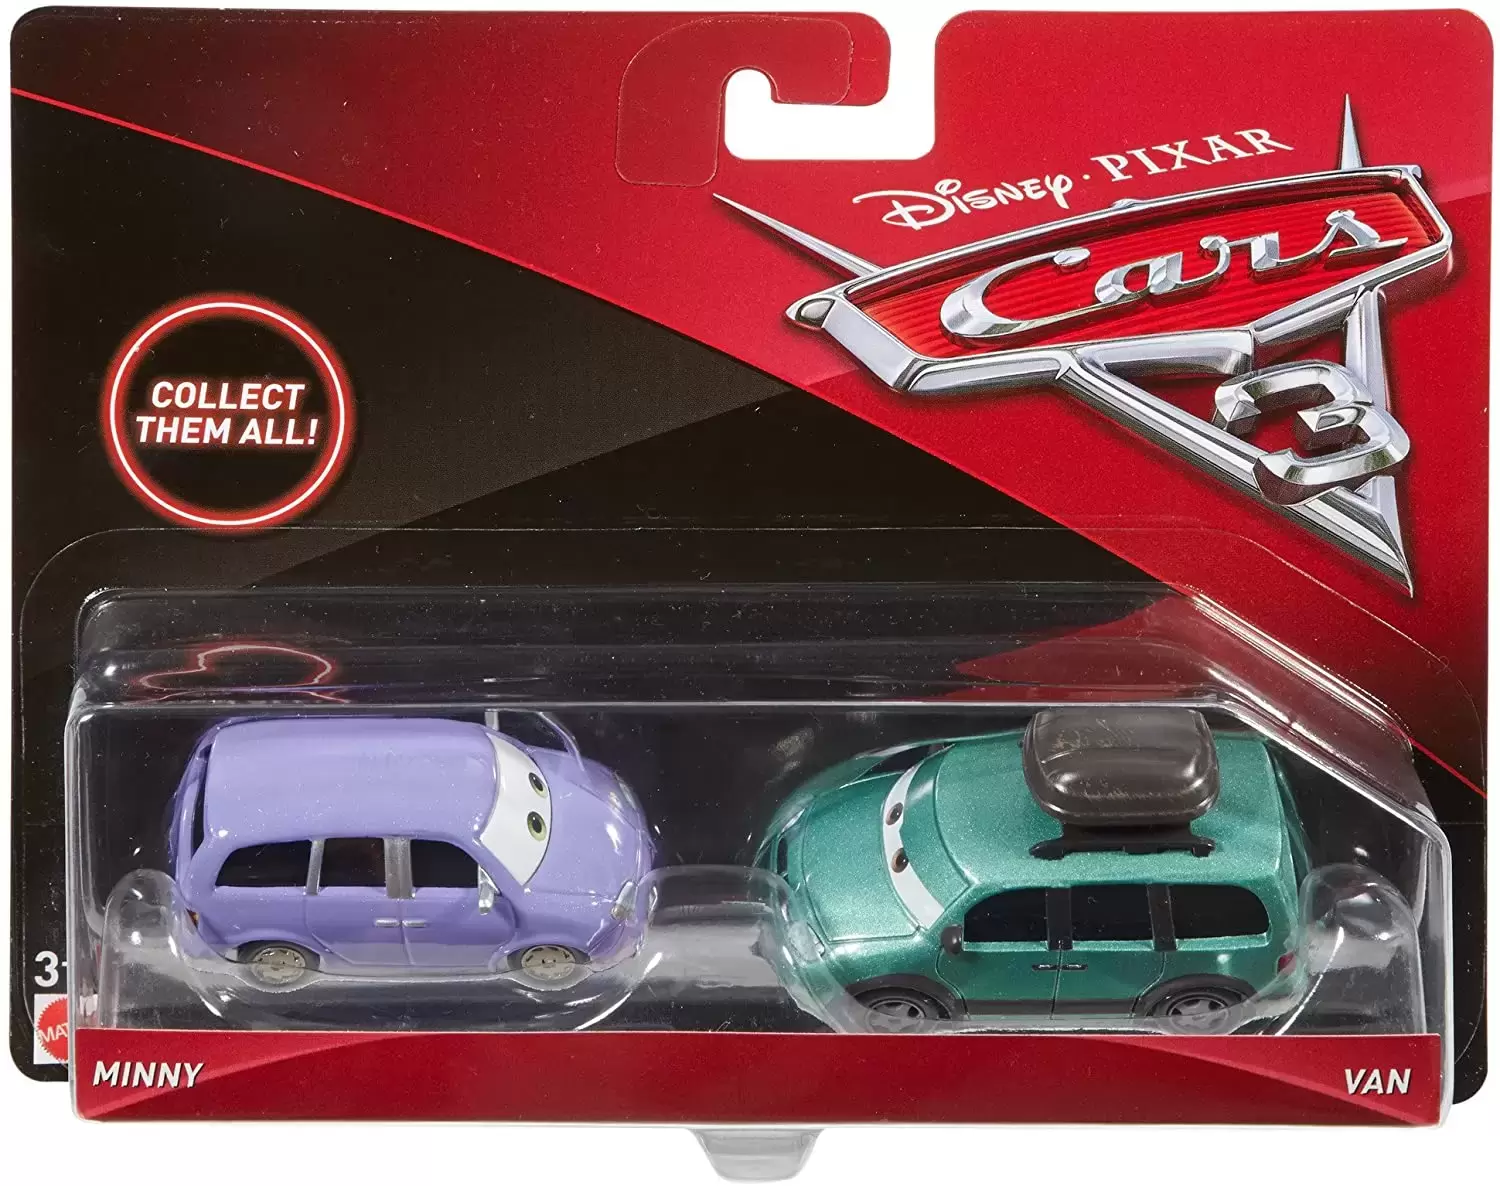 Cars 3 models - Minny & Van